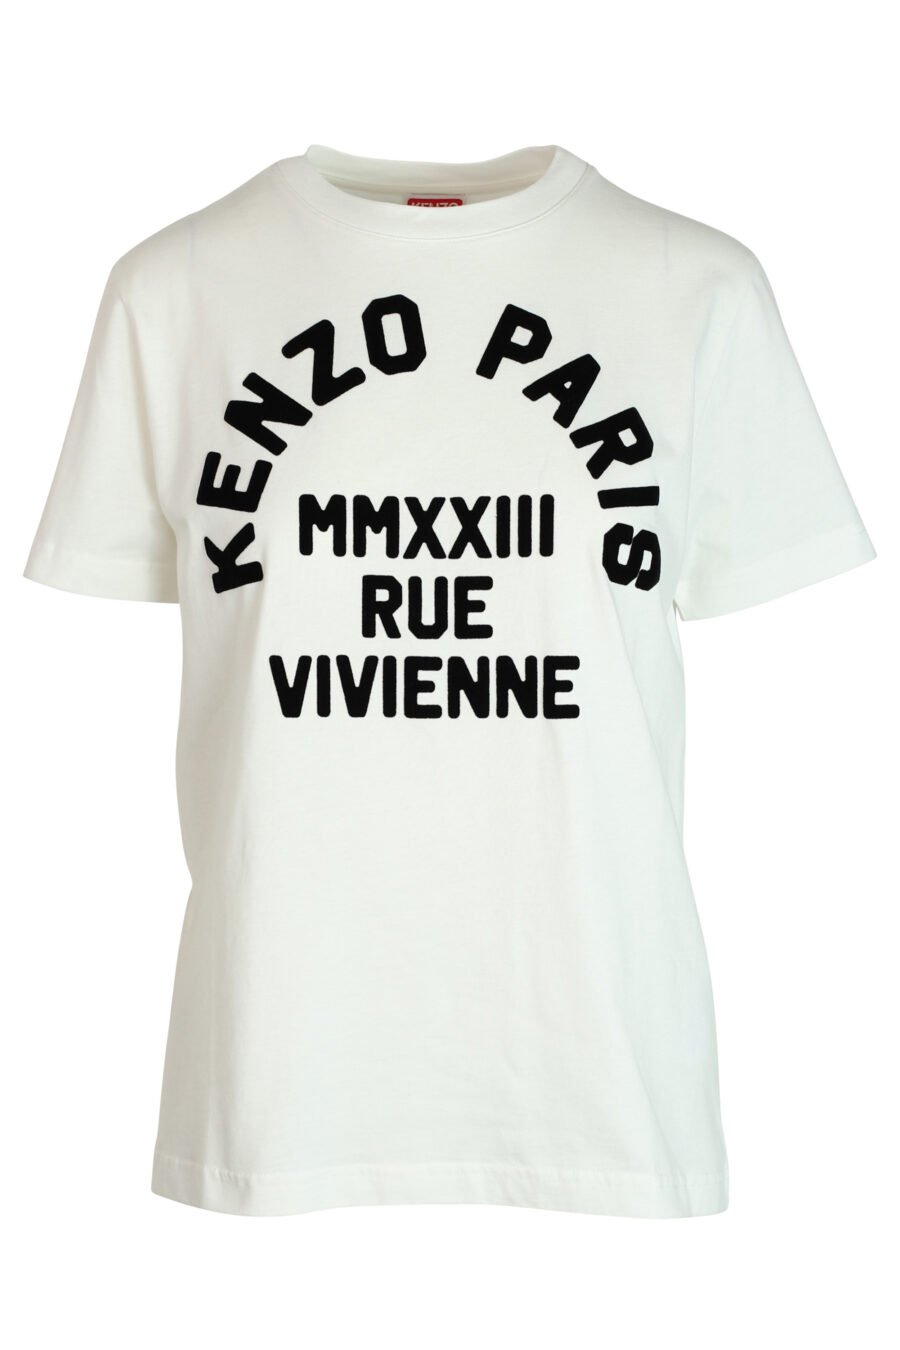 Weißes T-Shirt mit schwarzem "rue vivenne" Maxilogo - 3612230461161